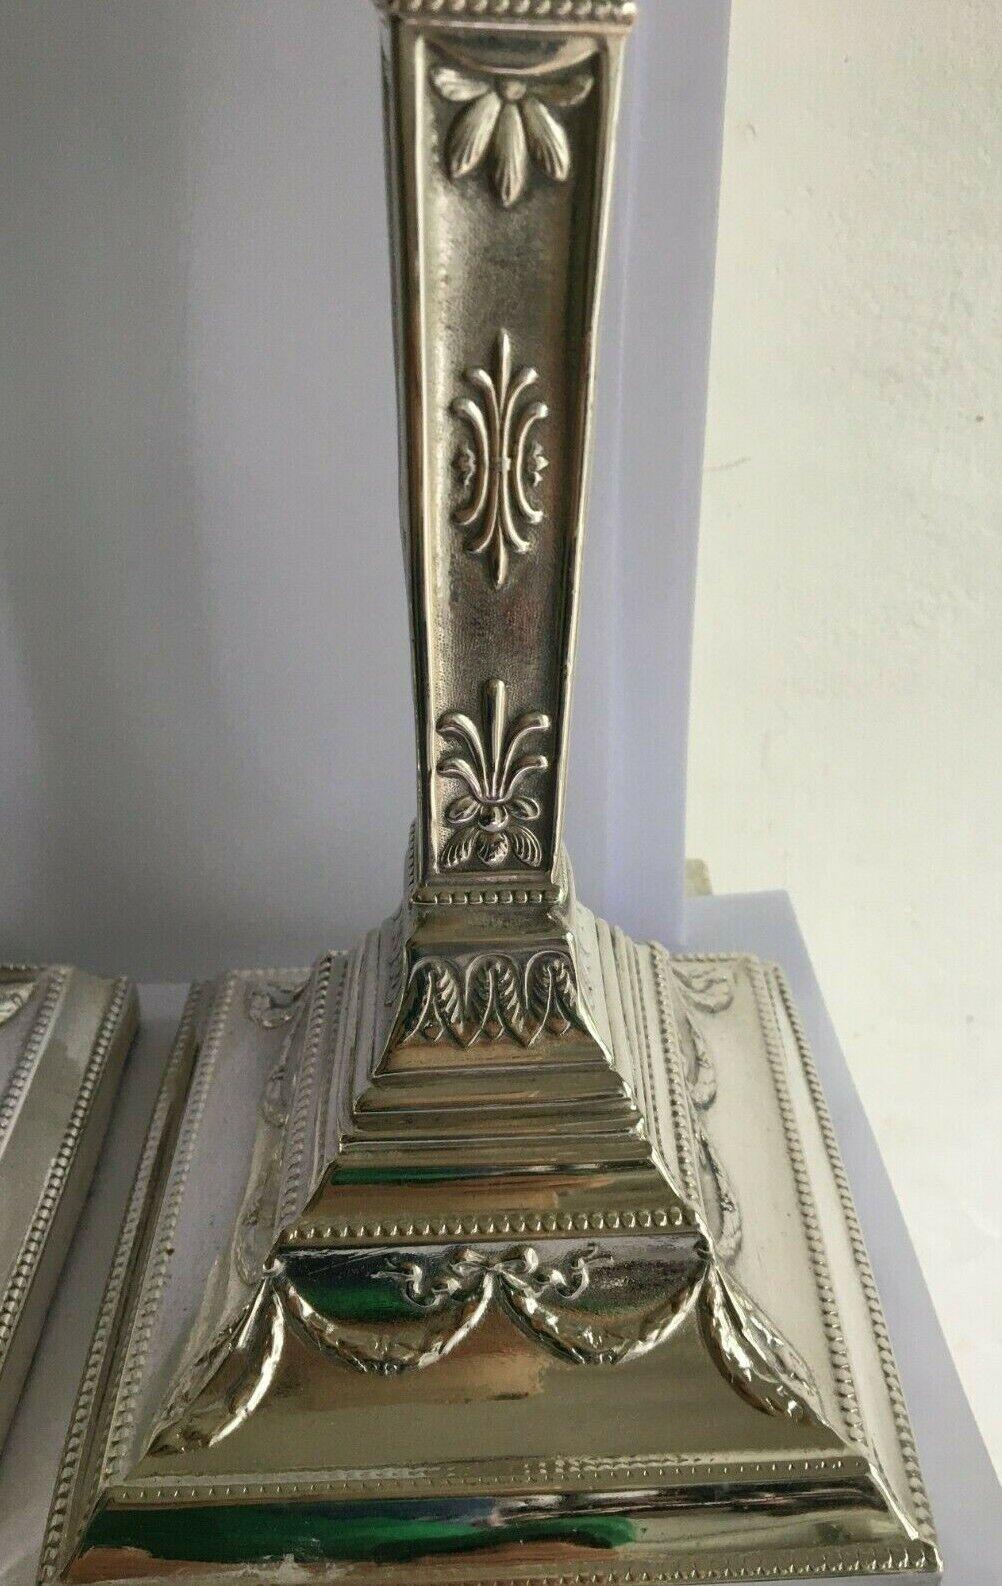 Paire de magnifiques chandeliers en métal argenté polonais

Fortement orné d'un design néoclassique.
Décoré de rinceaux de feuilles et de rubans. 
Les chandeliers sont en forme d'urne, agrémentés de guirlandes de rubans et de feuilles.
Elles sont